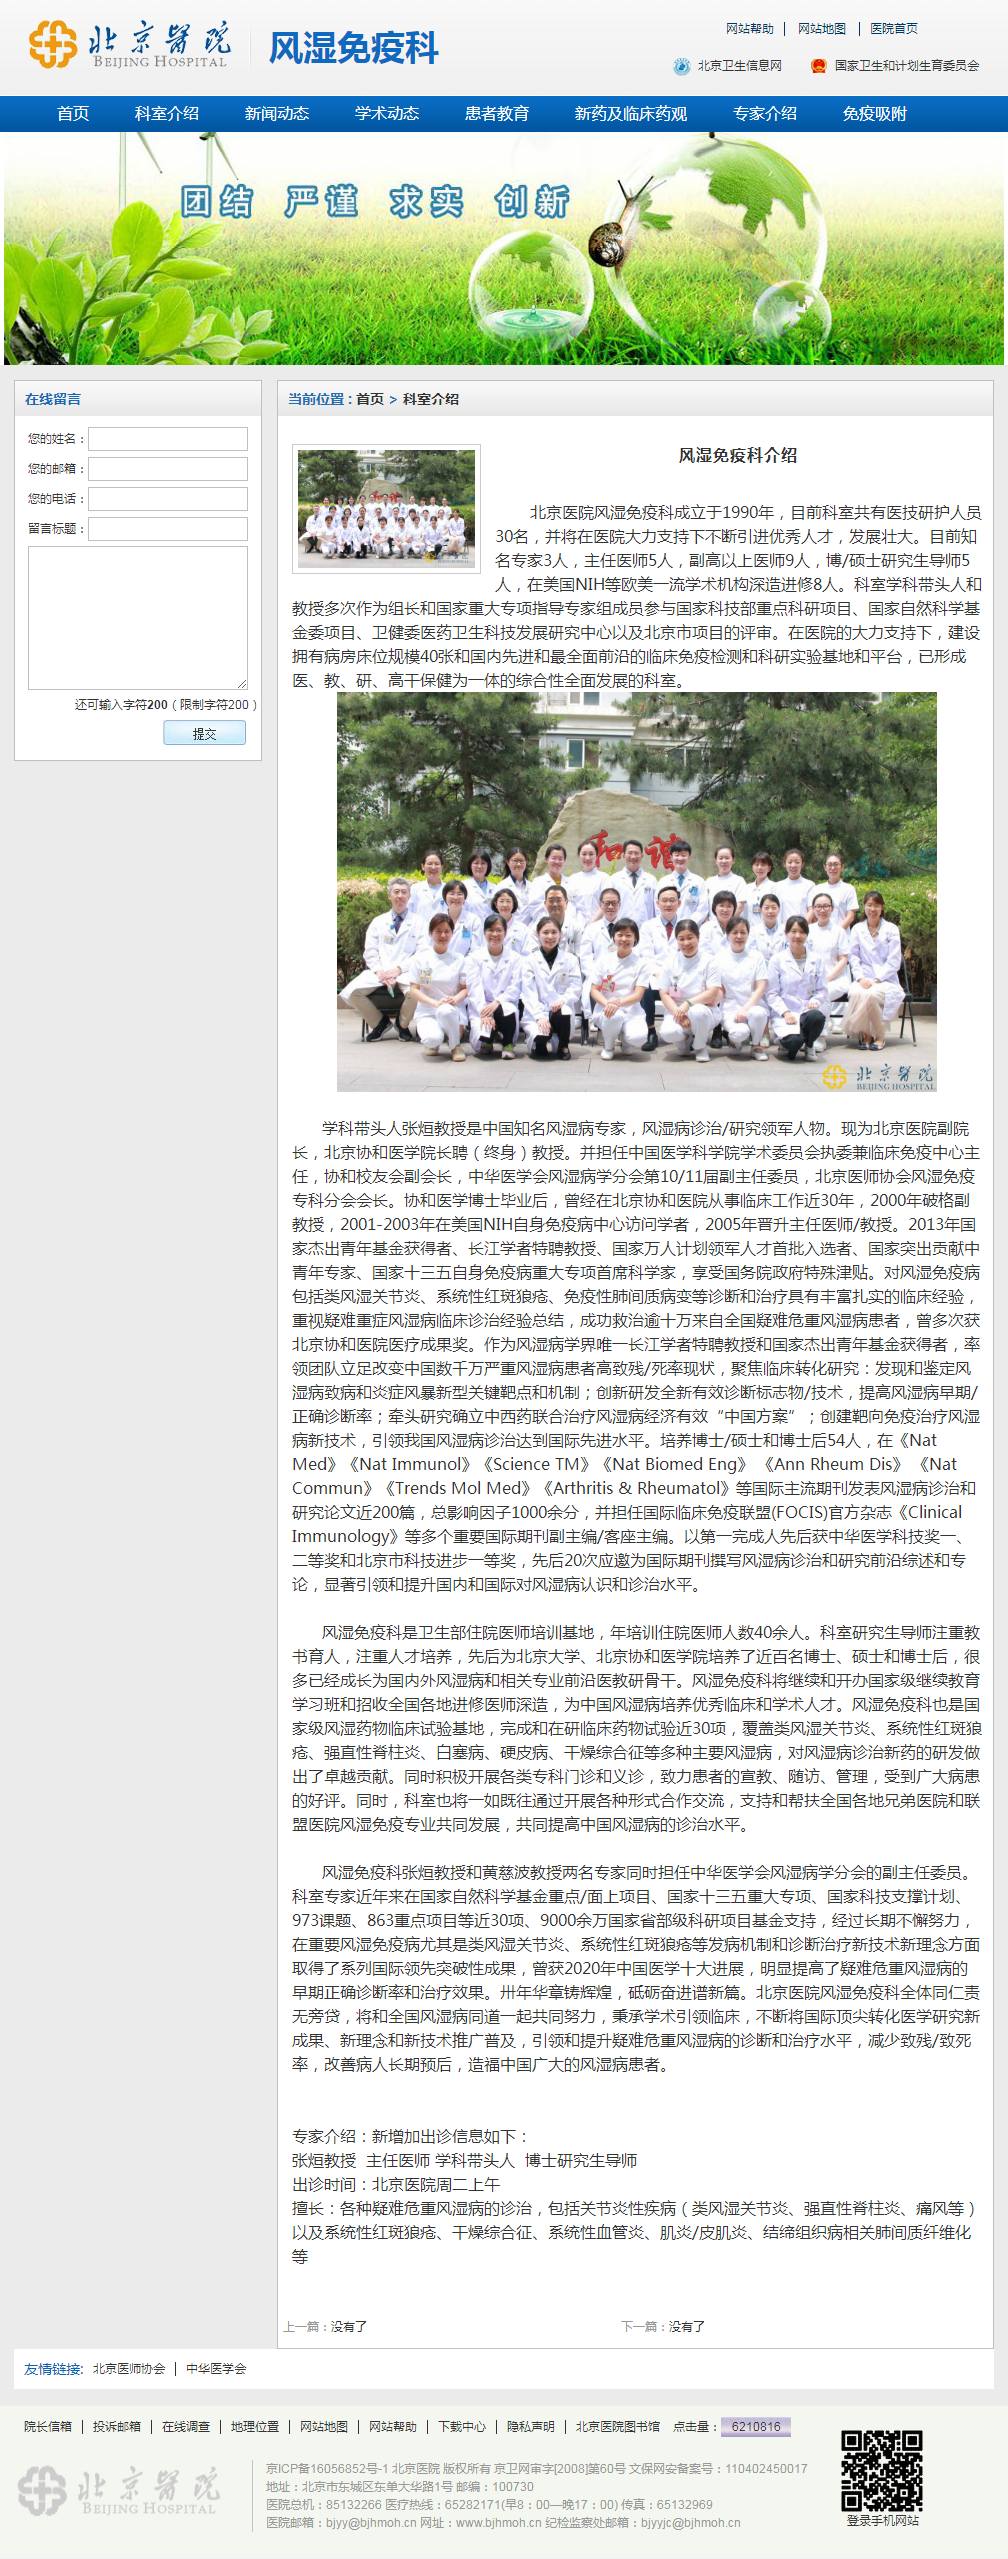 成都风湿医院京川专家联合会诊60个名额！亚太痛风联盟成都分中心成立三周年